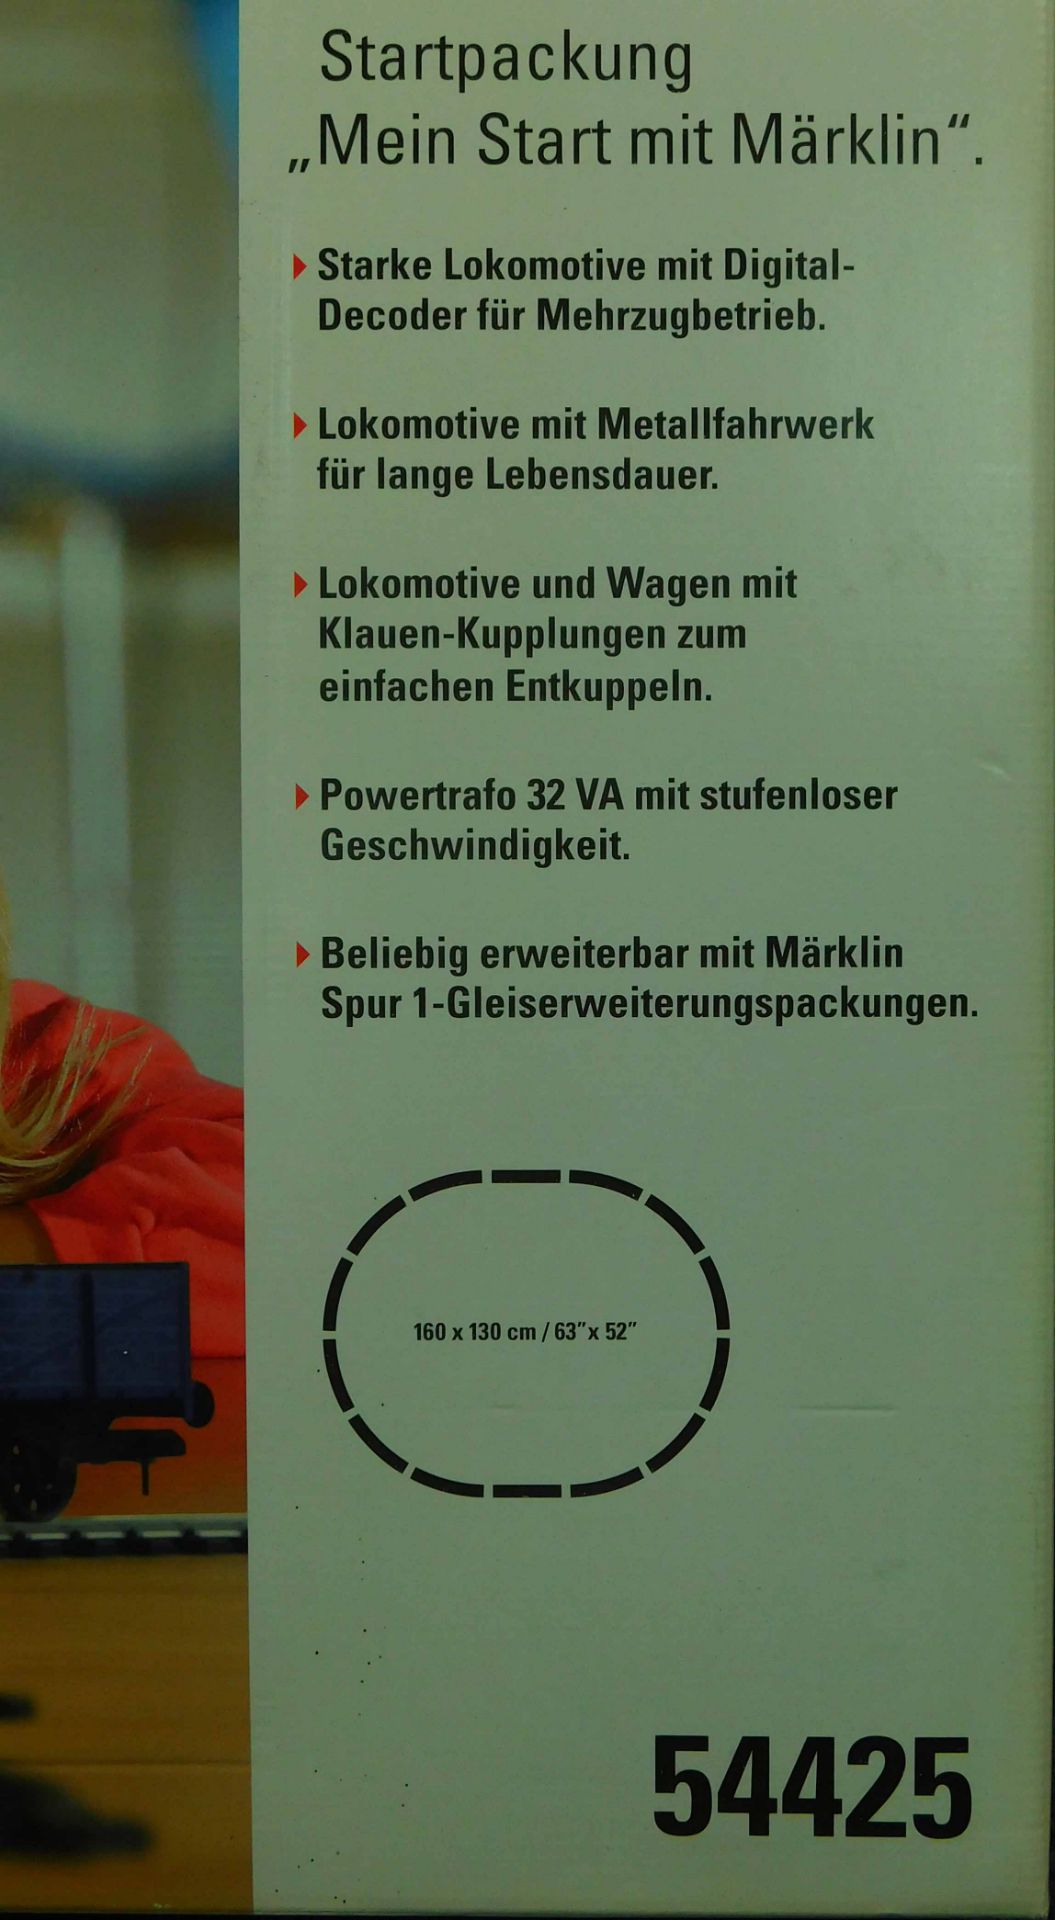 Starterset "Märklin" 54425. - Image 5 of 5